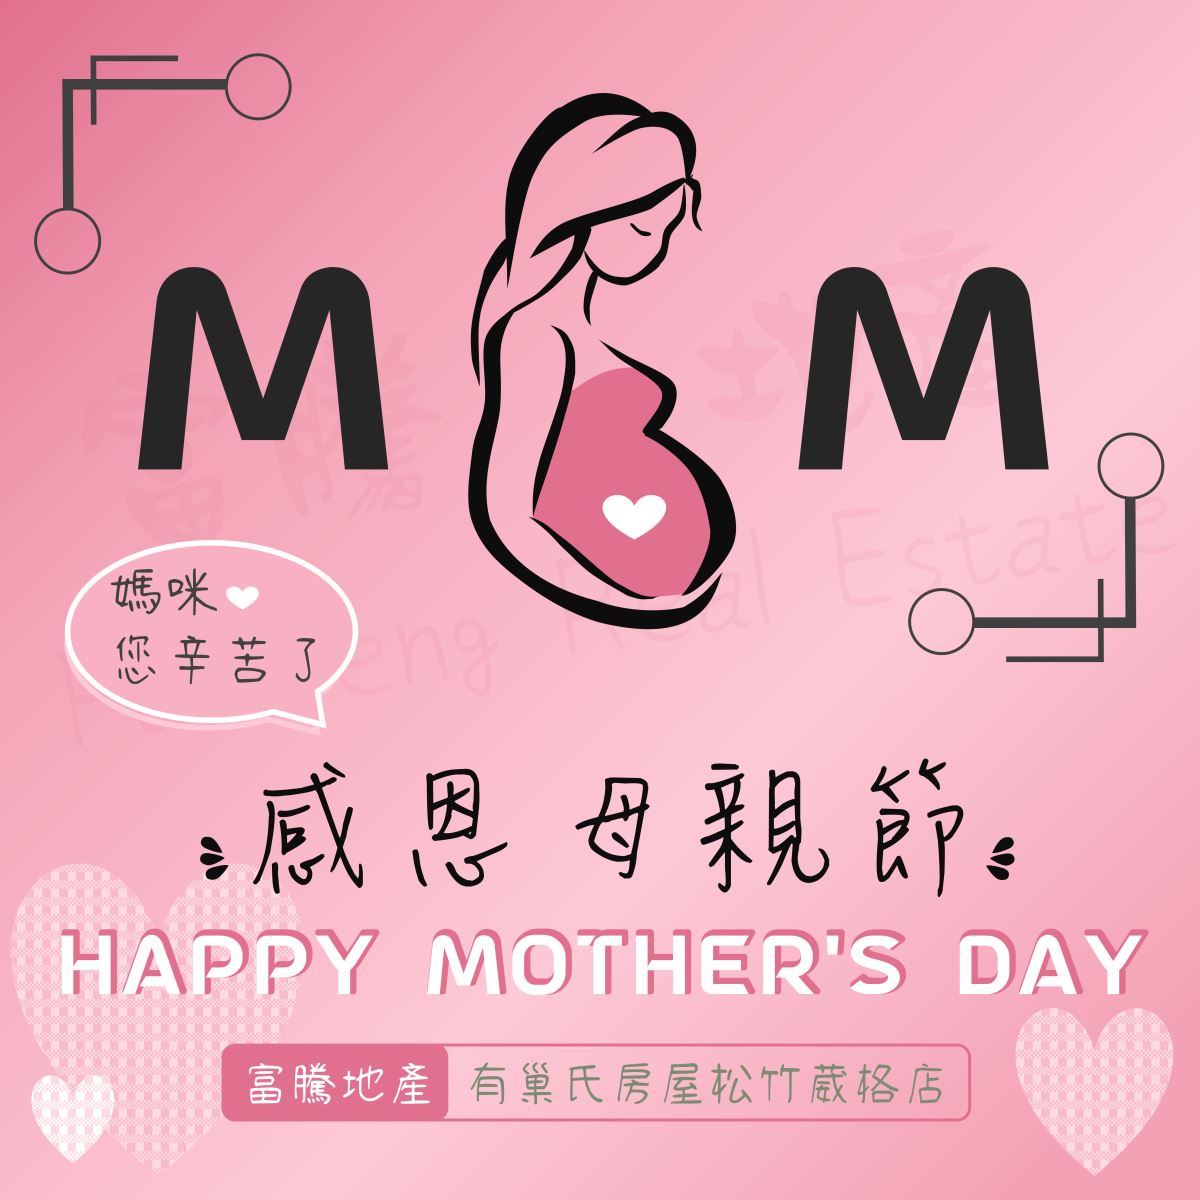 富騰祝天下媽媽母親節快樂!